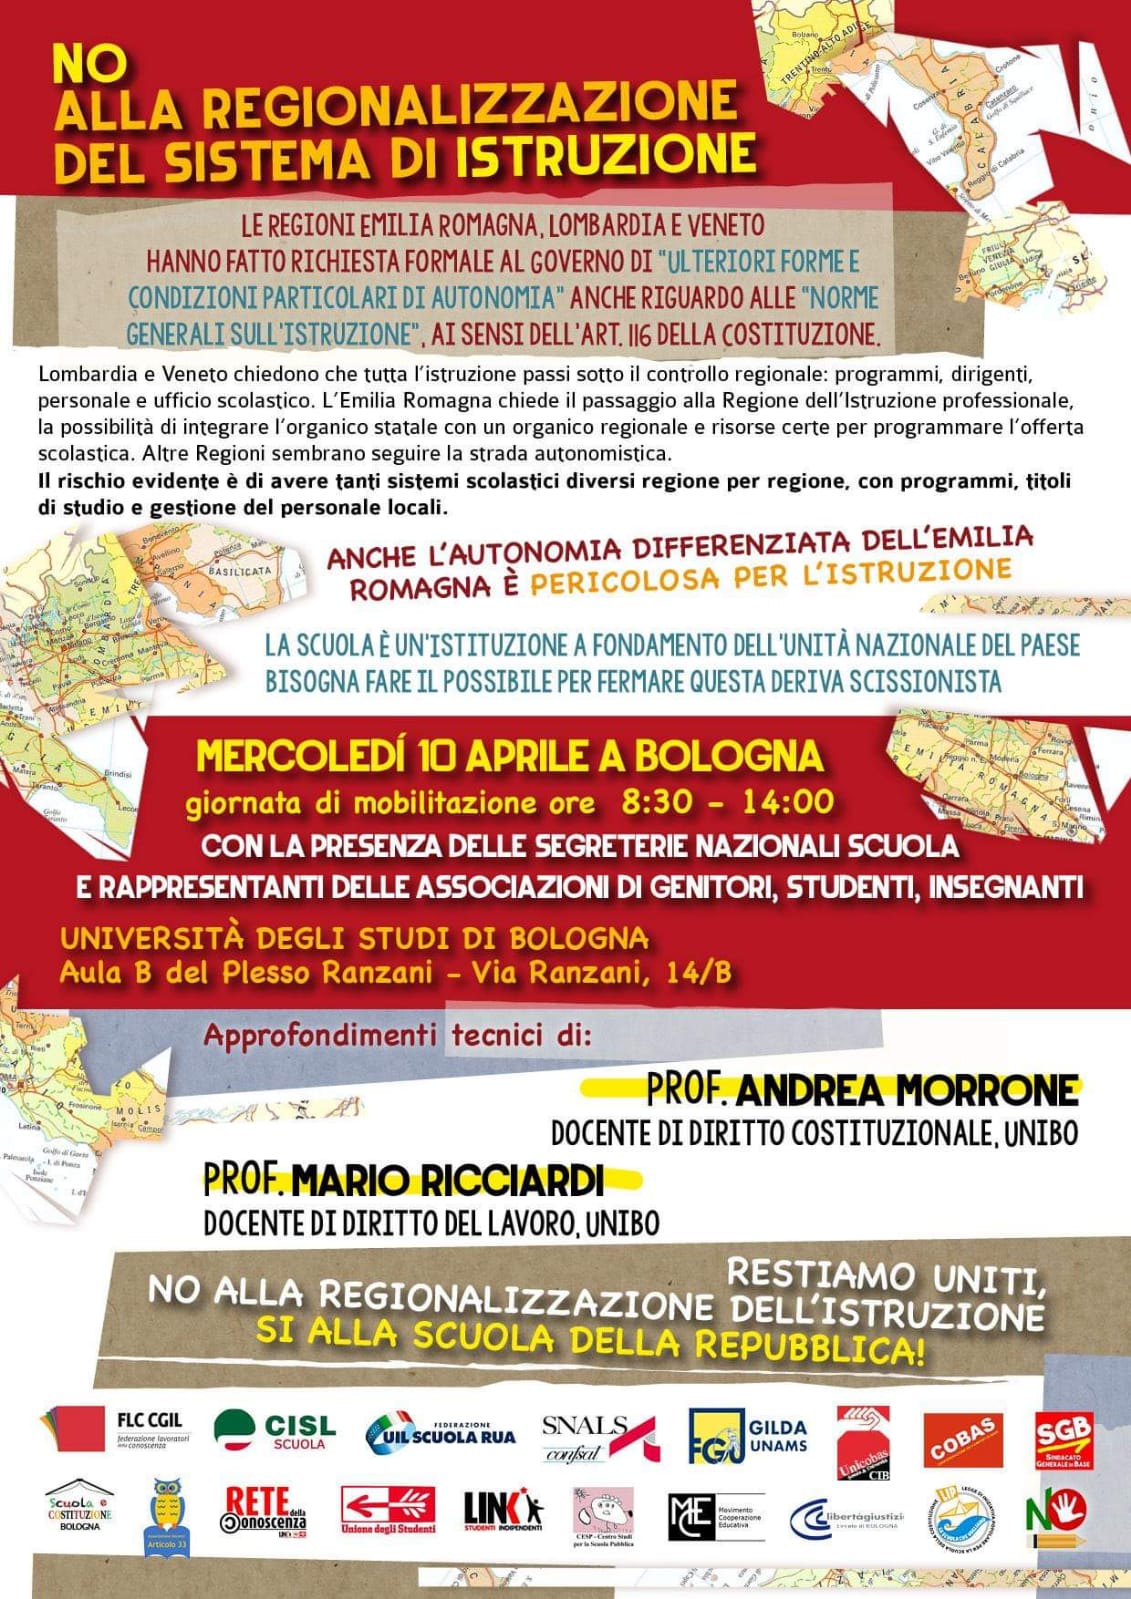 Autonomia differenziata, giornata di mobilitazione a Bologna il 10 aprile